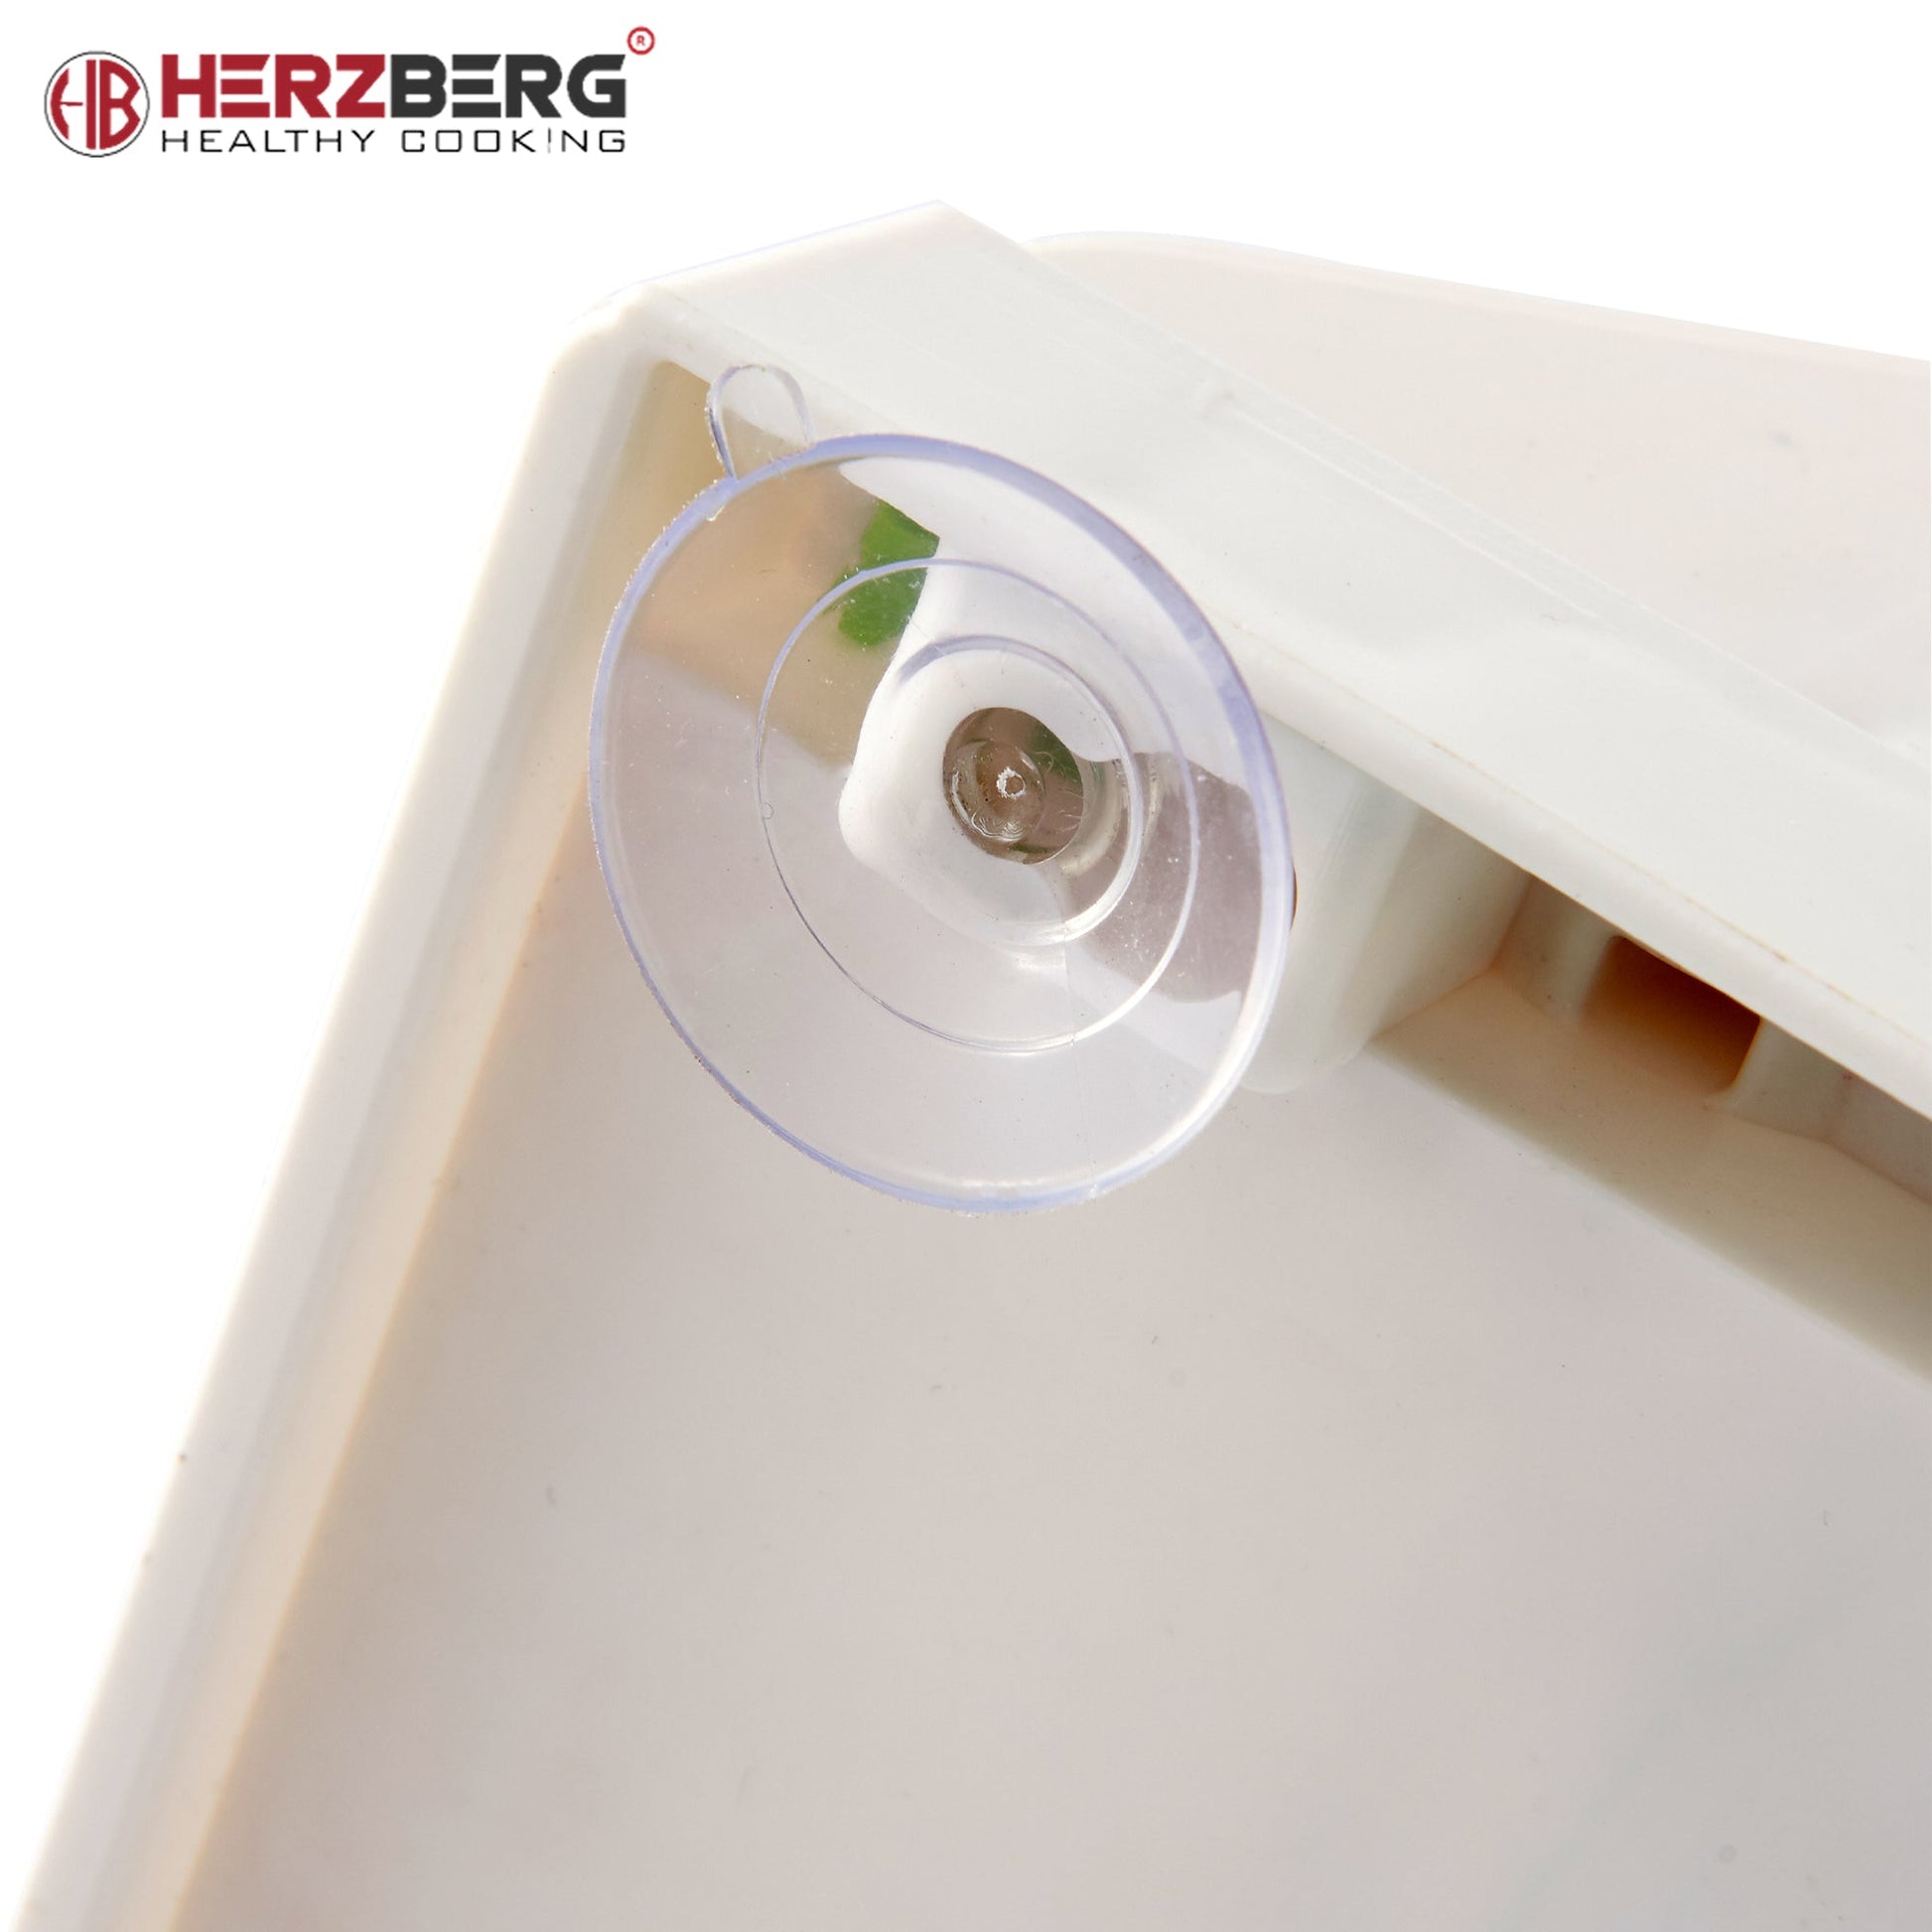 Herzberg HG-8030: Groentenspiralisatorset - Bivakshop